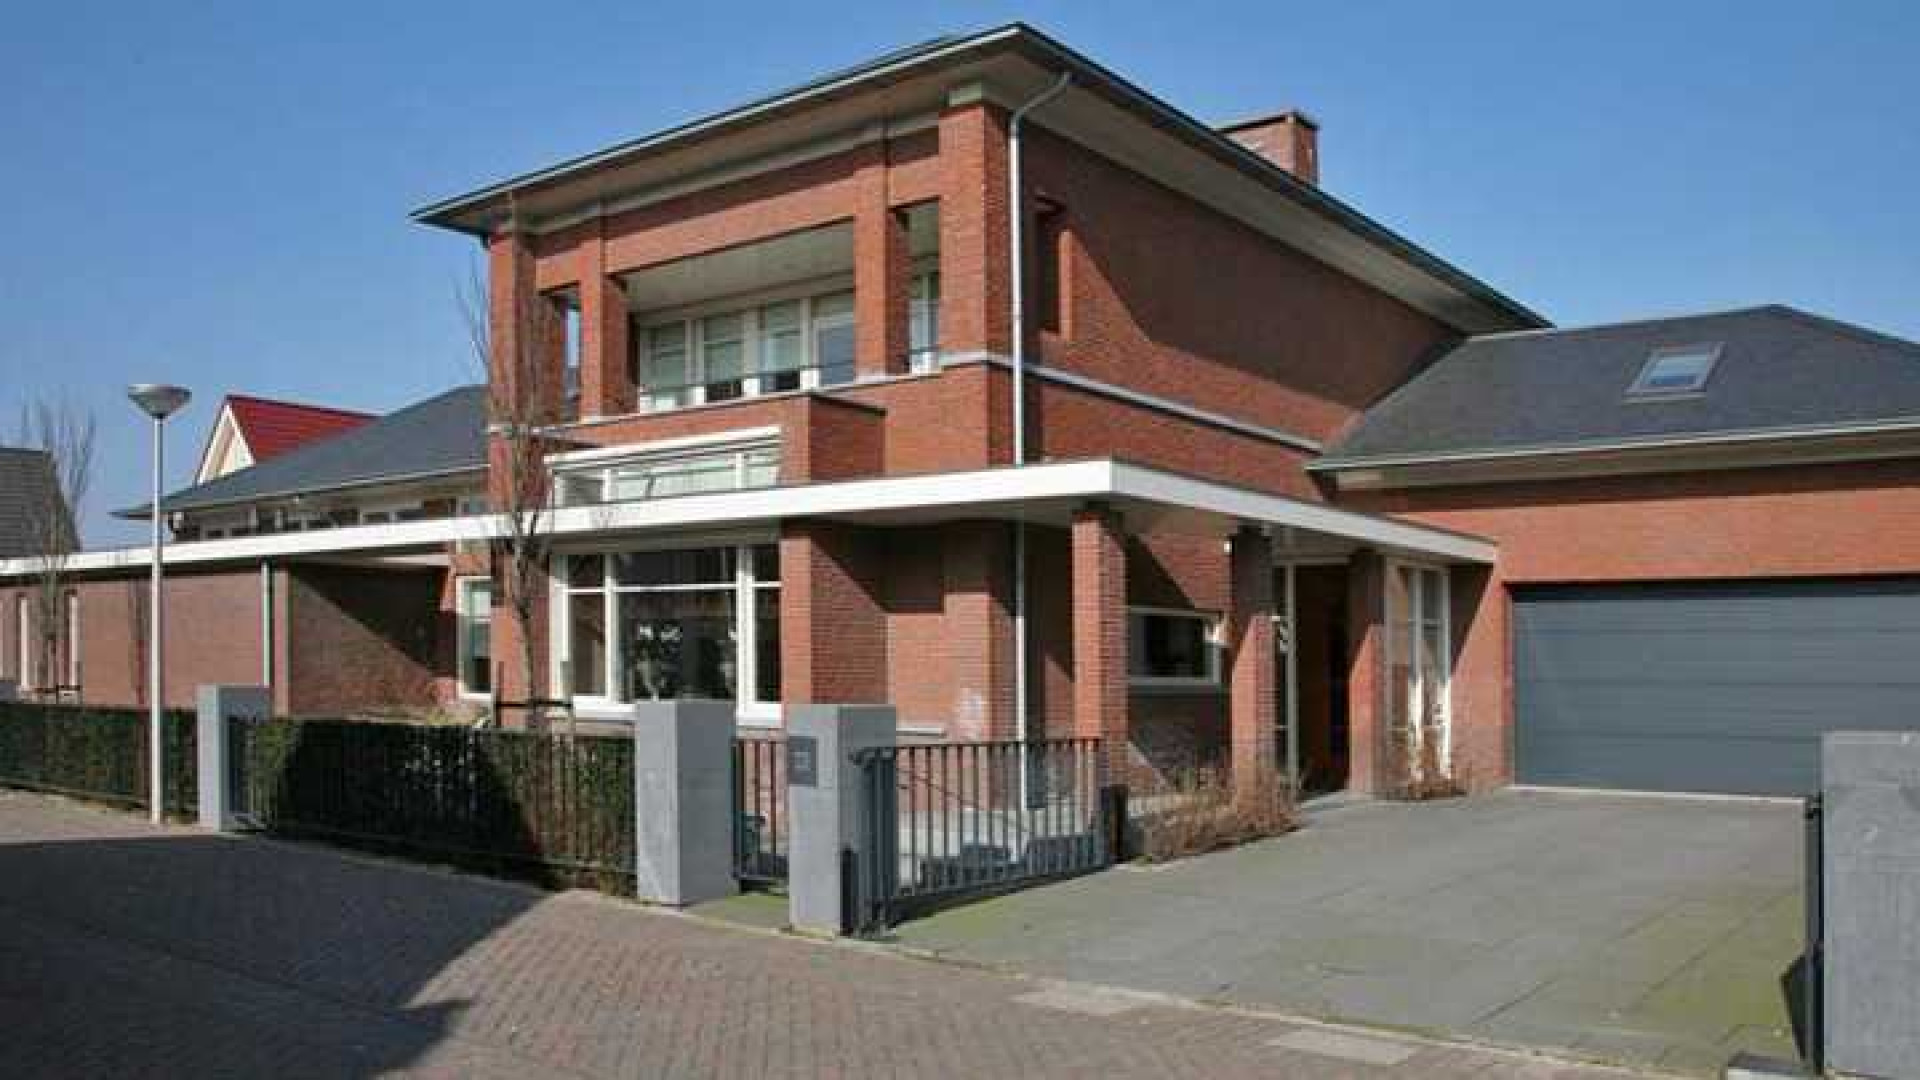 Yolanthe en Wesley Sneijder verhuist naar deze villa in Vleuten. Zie foto's 1